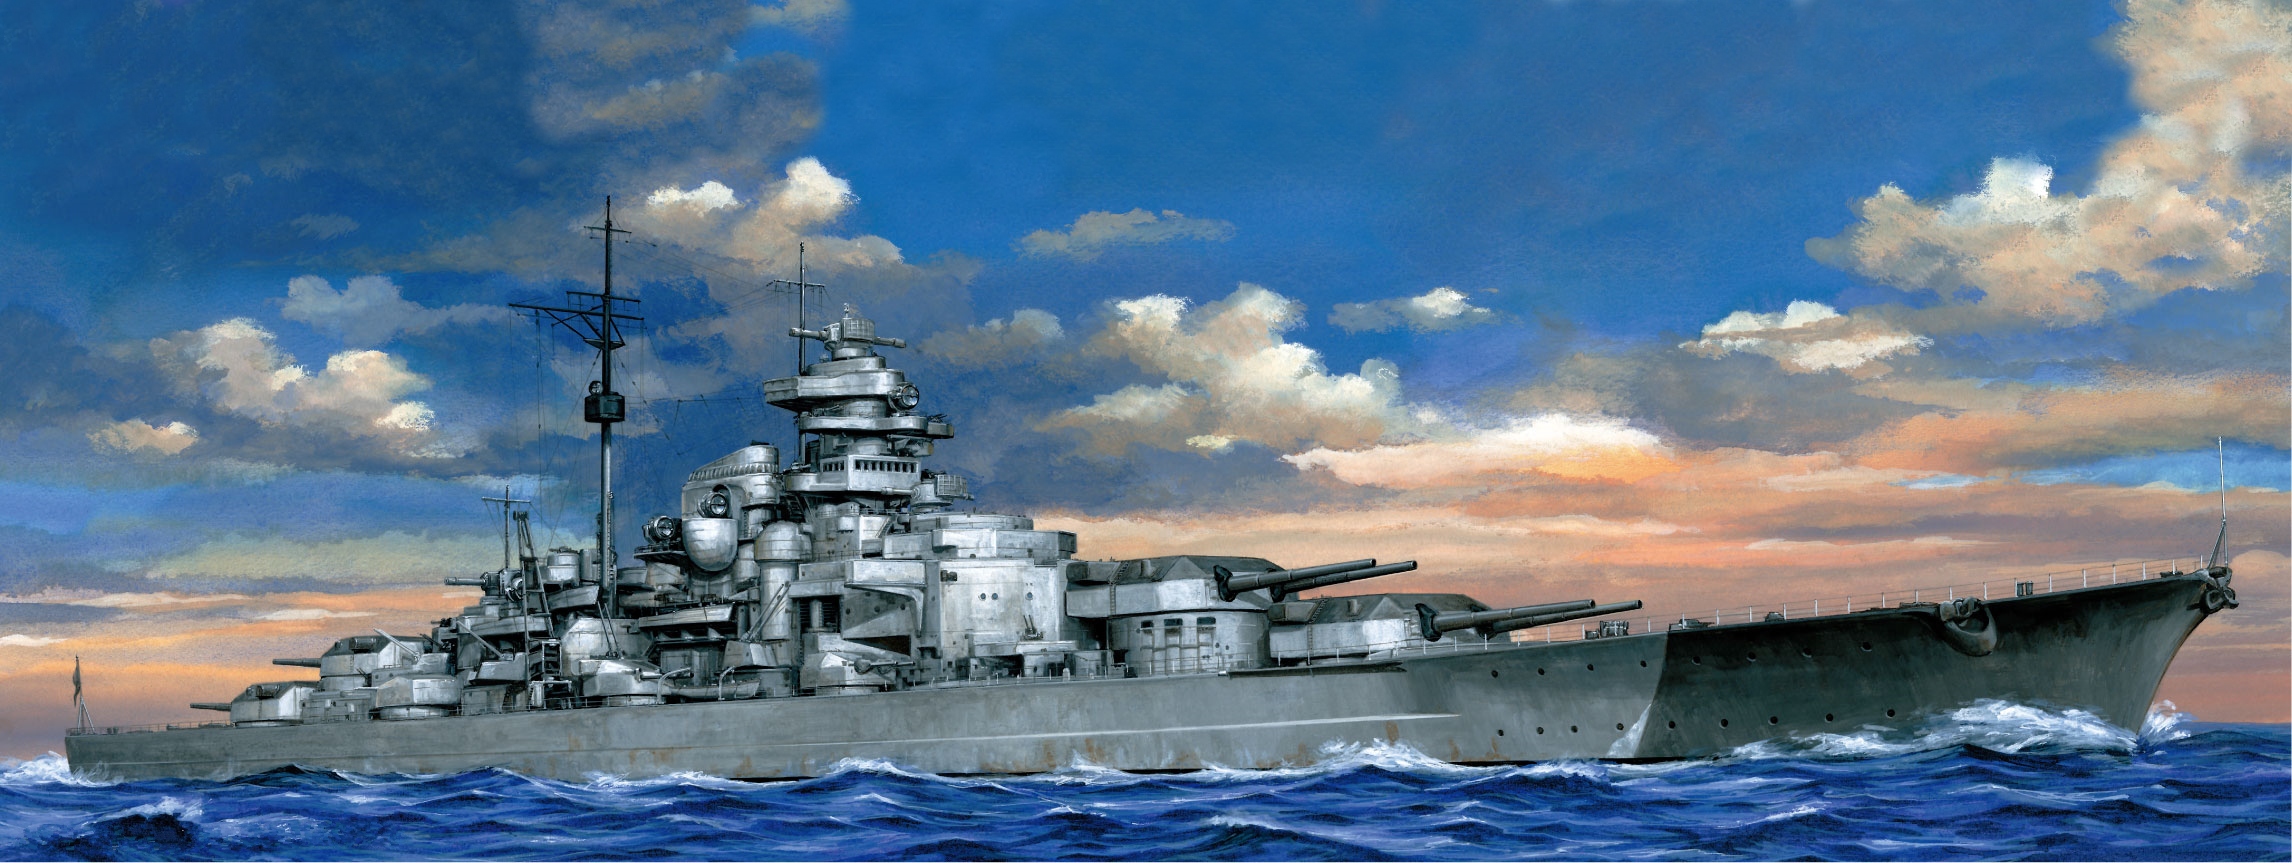 Ð ðññðððº german battleship bismarck ðð ñðððñðð ññðð ðððñ war wallpapers